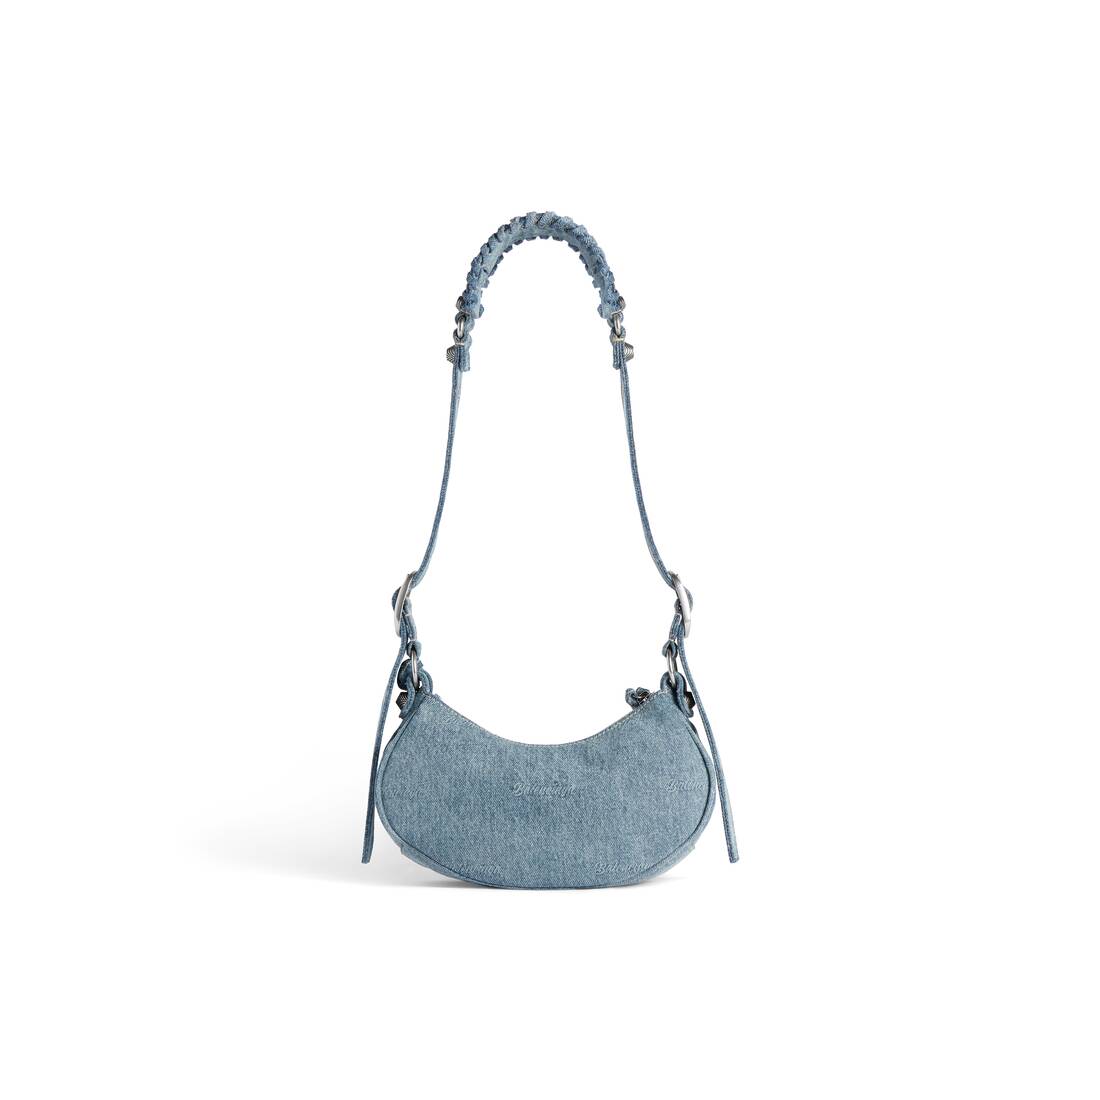 Balenciaga XS Baby Blue Round Soft Leather Crossbody Shoulder Bag NWT